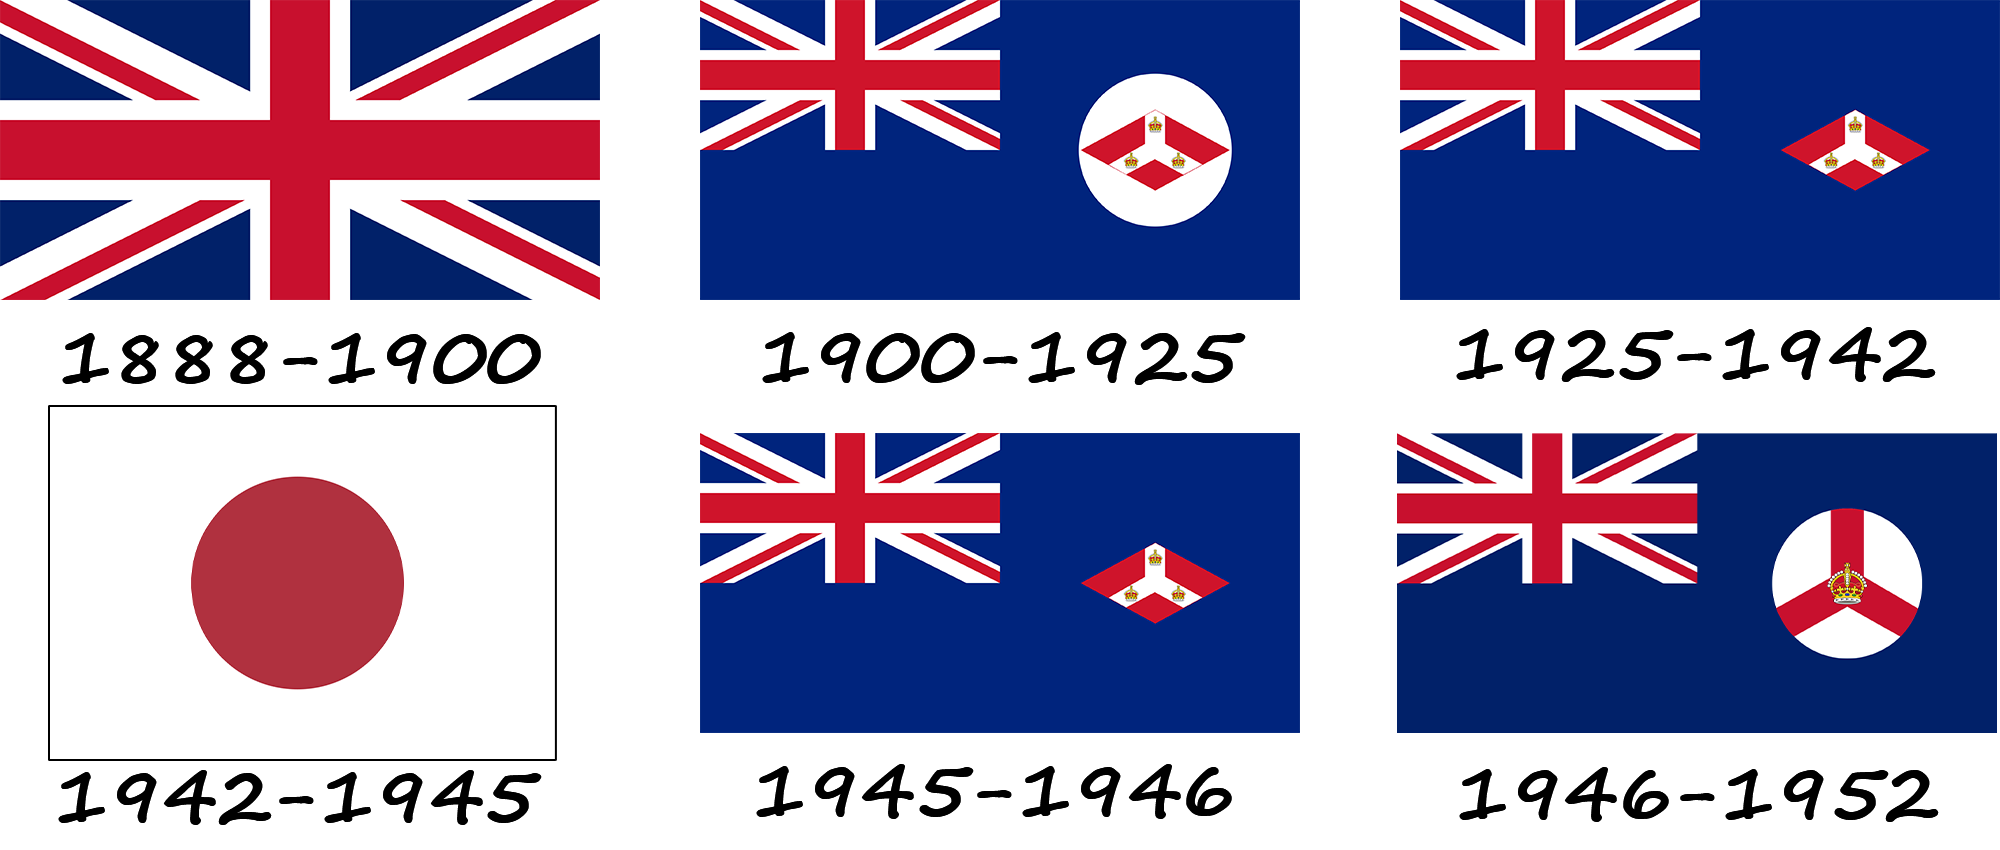 History of the Christmas Island flag